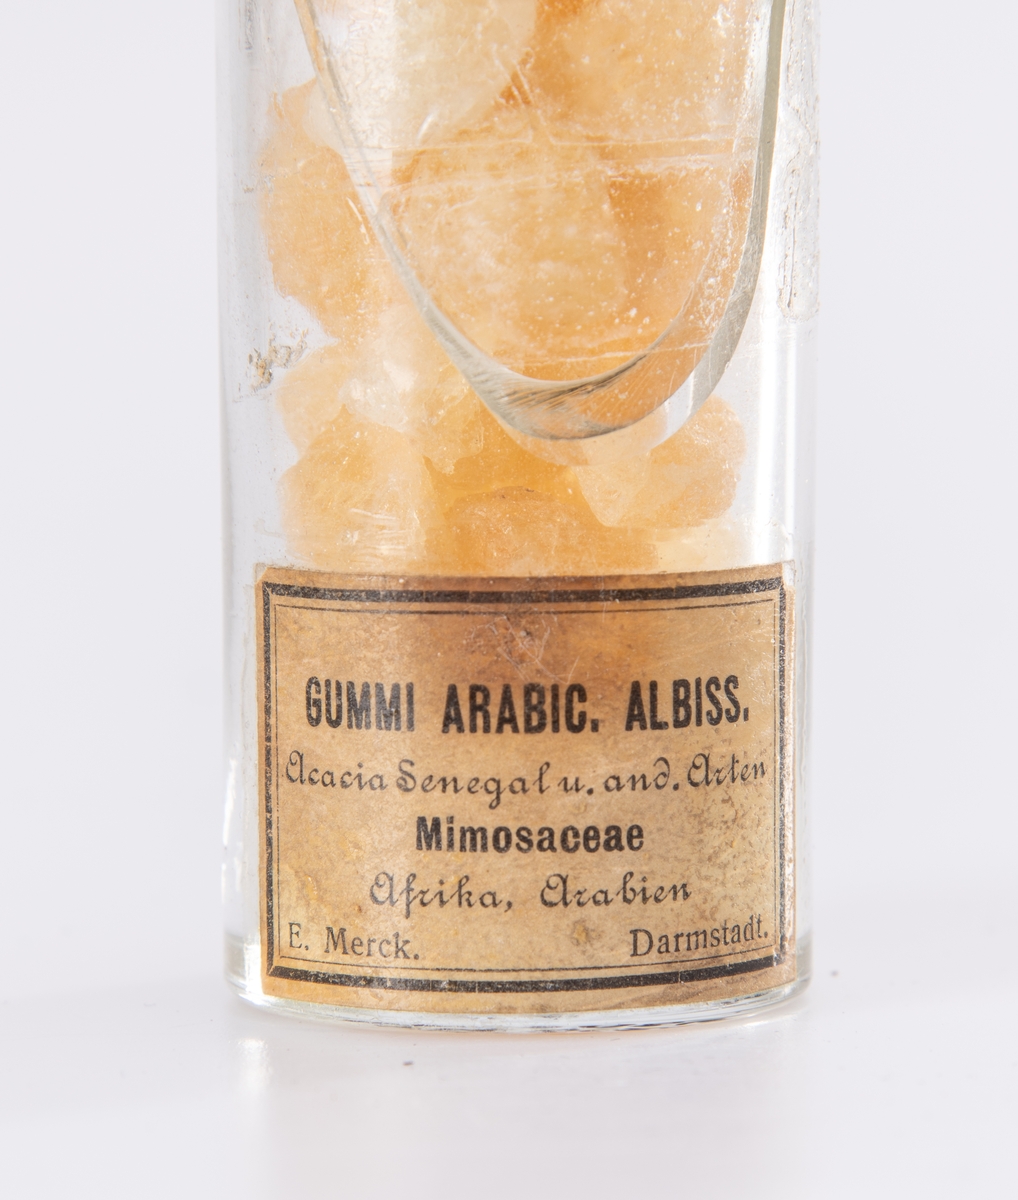 Drogesamling bestående av drogeprøver på sylinderformet glass med svart lokk. Tre ulike størrelser på glassene.
